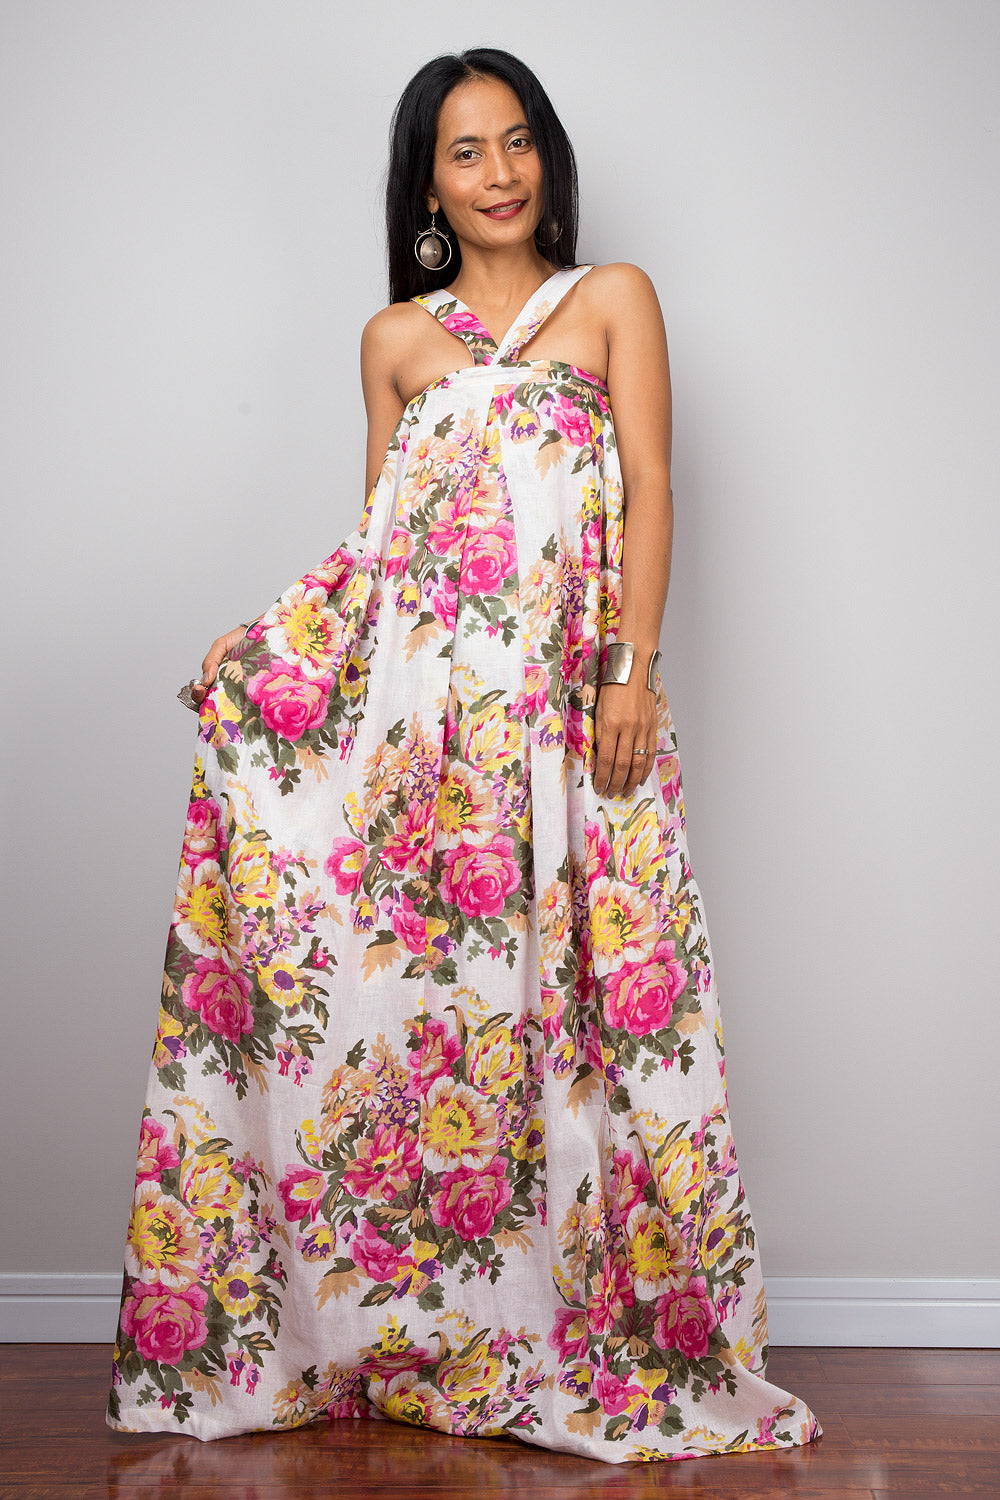 Floral dress, Summer Dress, Pink floral cotton dress, sleeveless